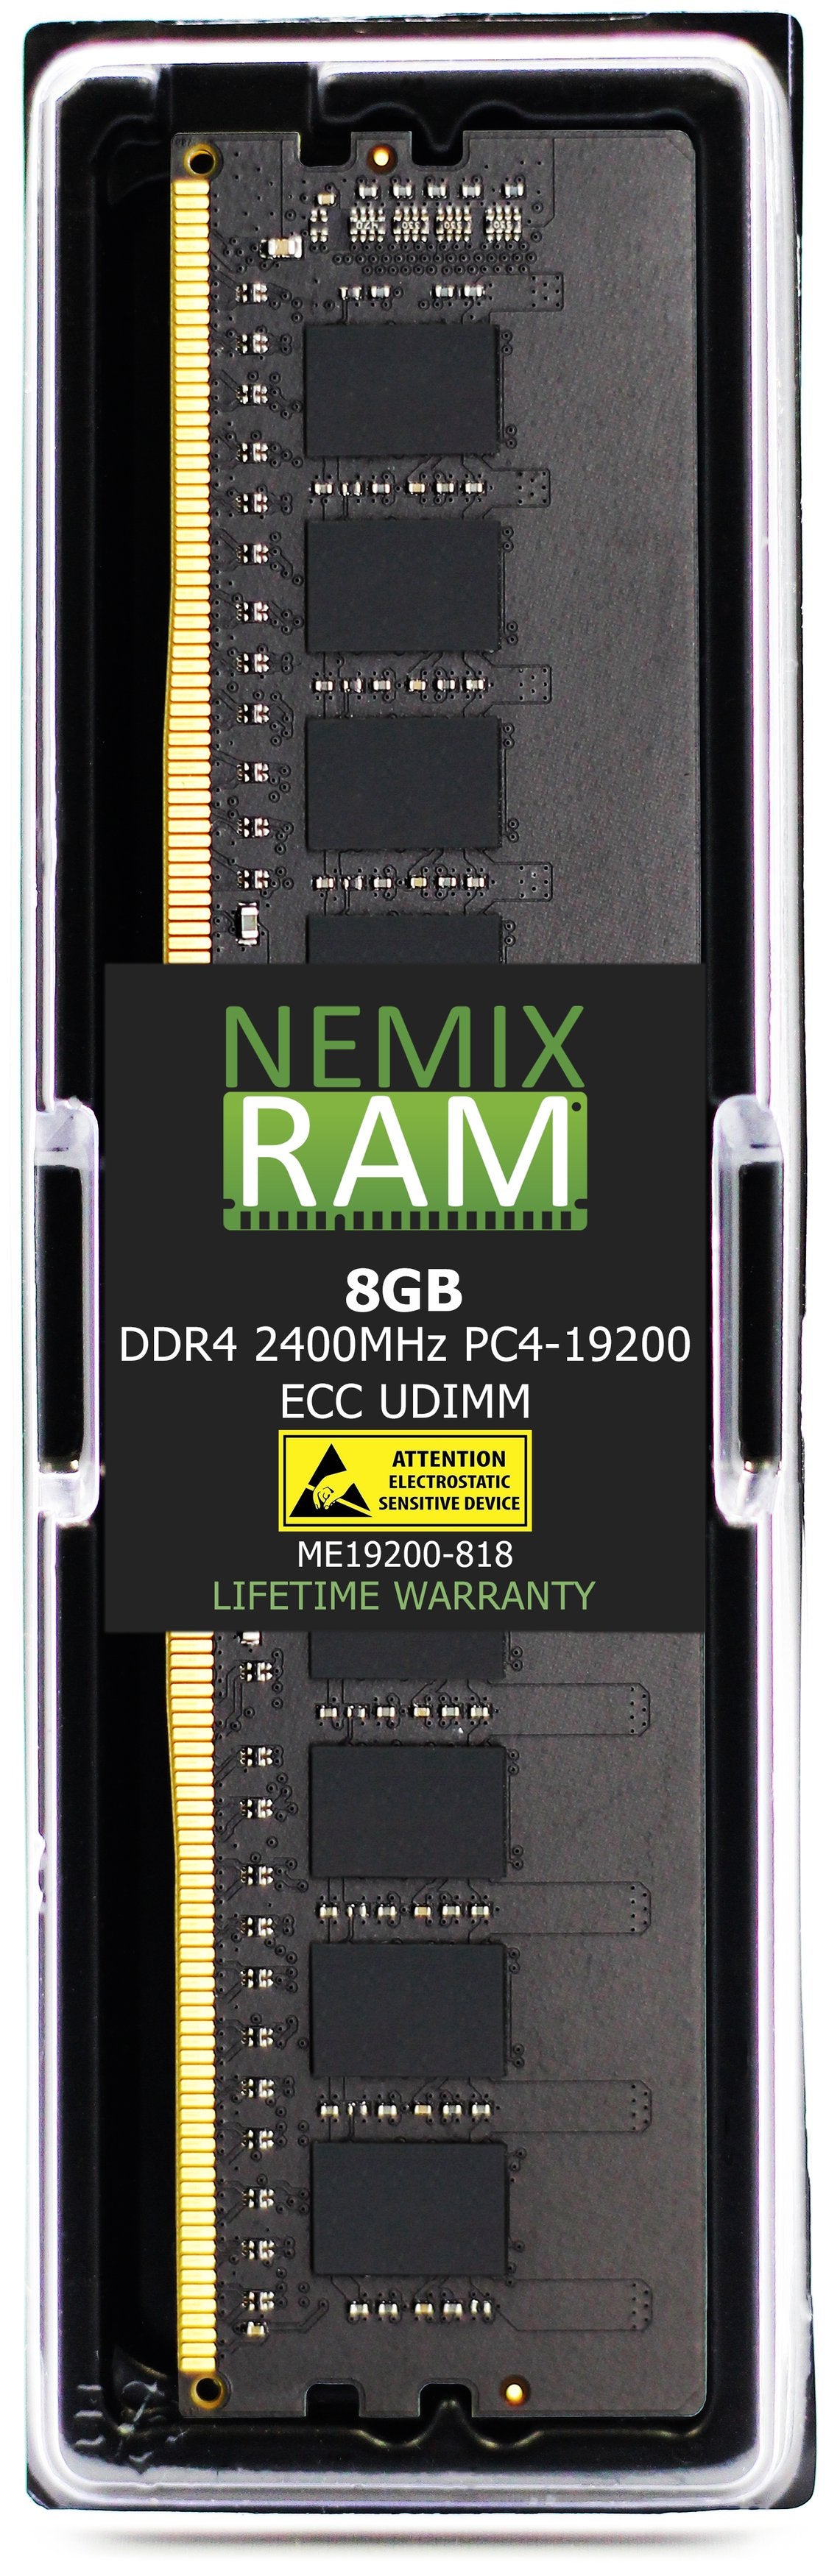 8GB DDR4 2400MHZ PC4-19200 ECC UDIMM Compatible with Supermicro MEM-DR480L-CL01-EU24